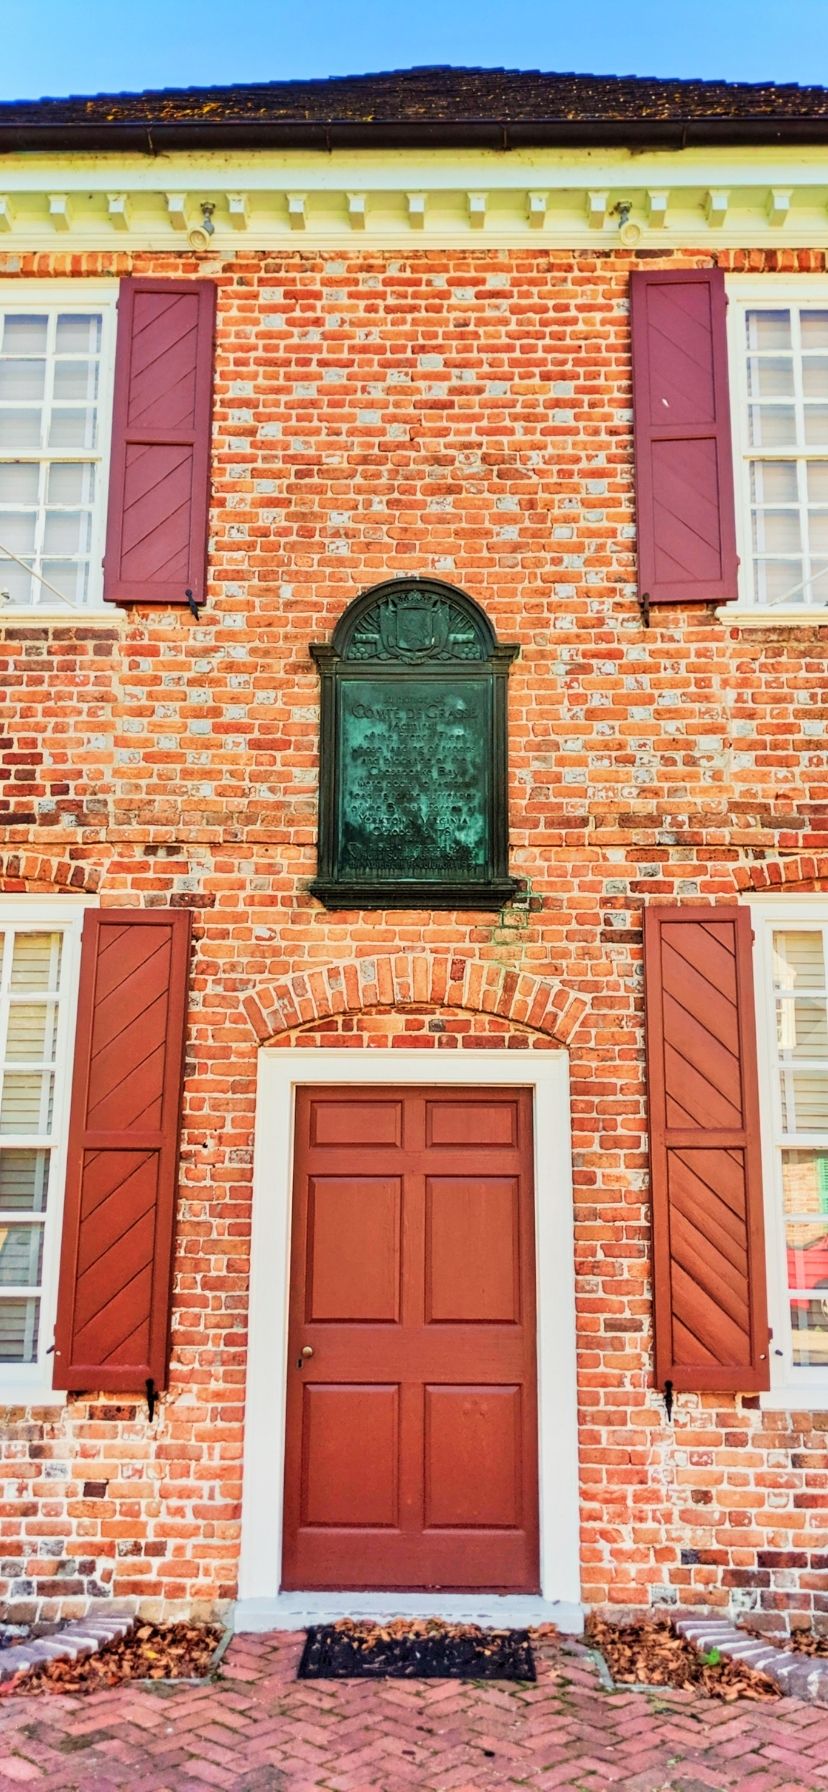 Colonial Town Buildings in Historic Yorktown Virginia